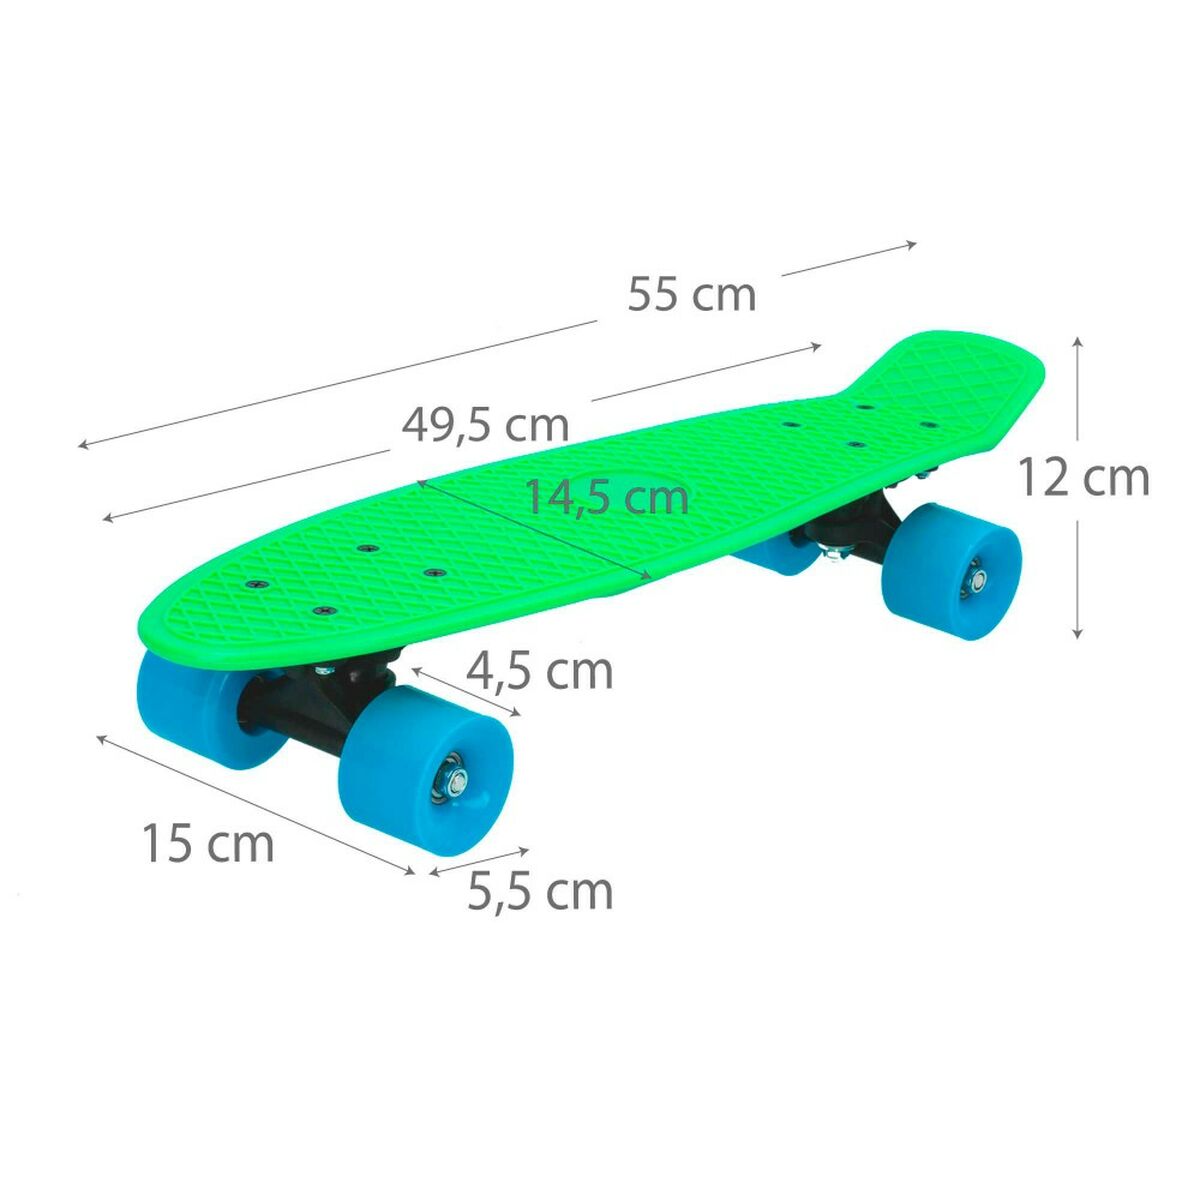 Skateboard Colorbaby Grön (6 antal)-Leksaker och spel, Sport och utomhus-Colorbaby-peaceofhome.se